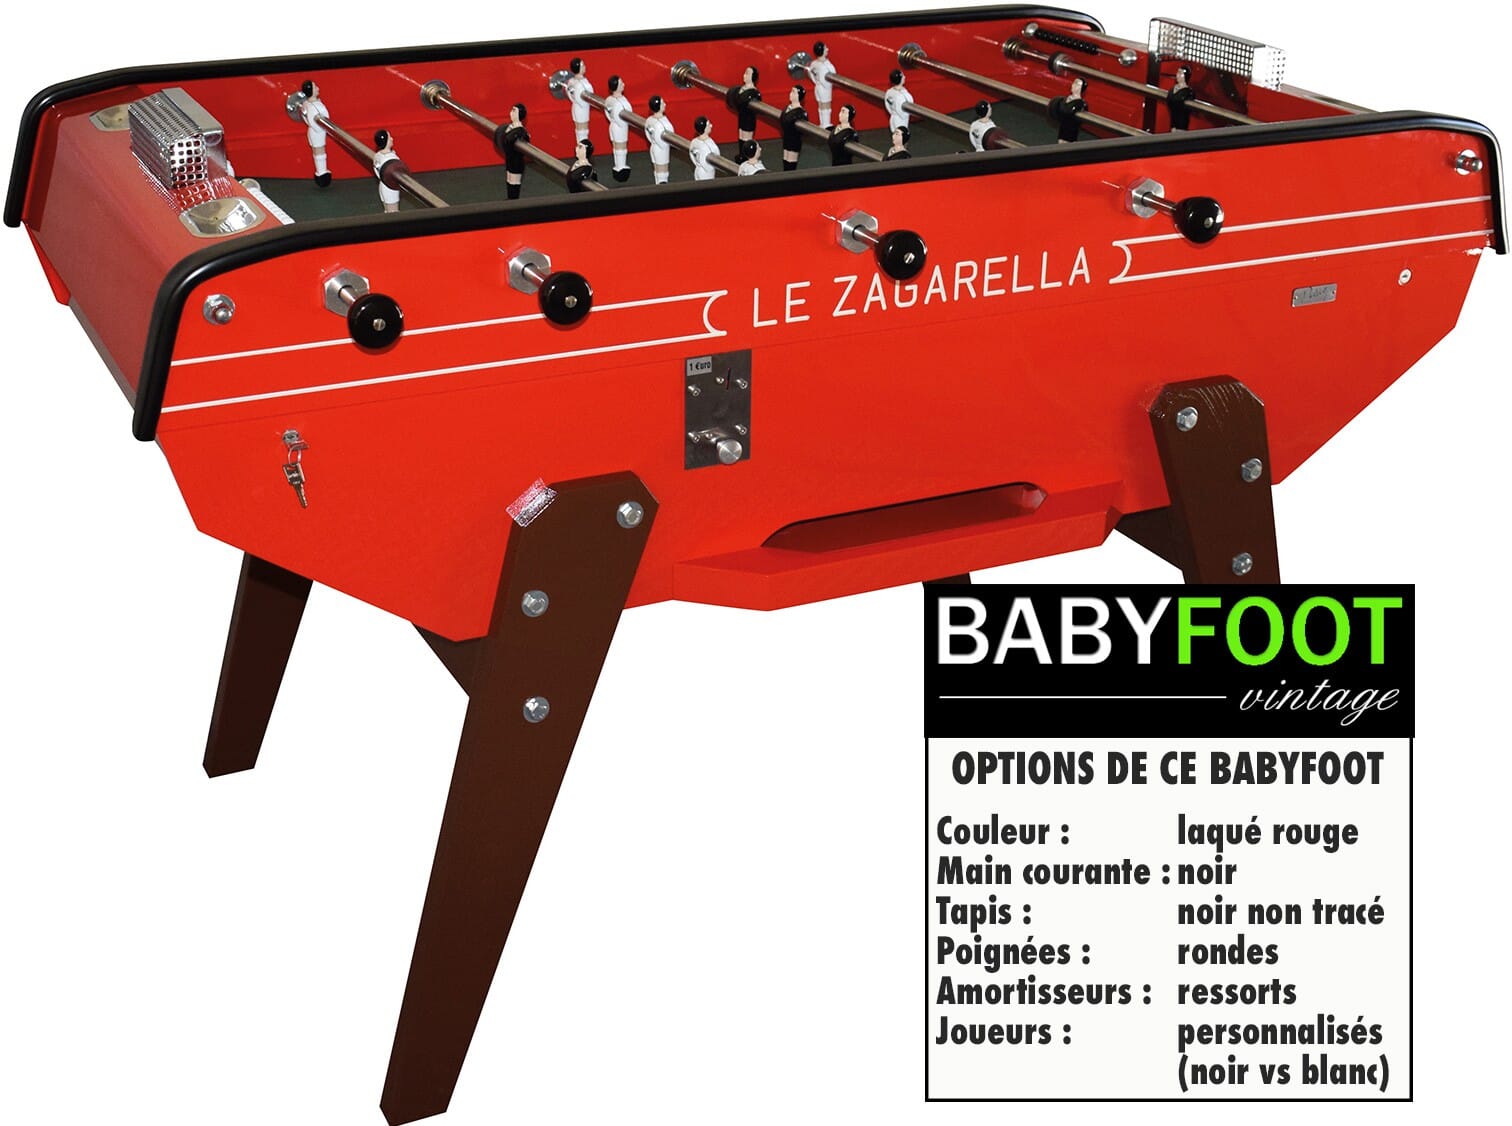 Baby foot Petiot Monnayeur Café - Babyfoot Vintage